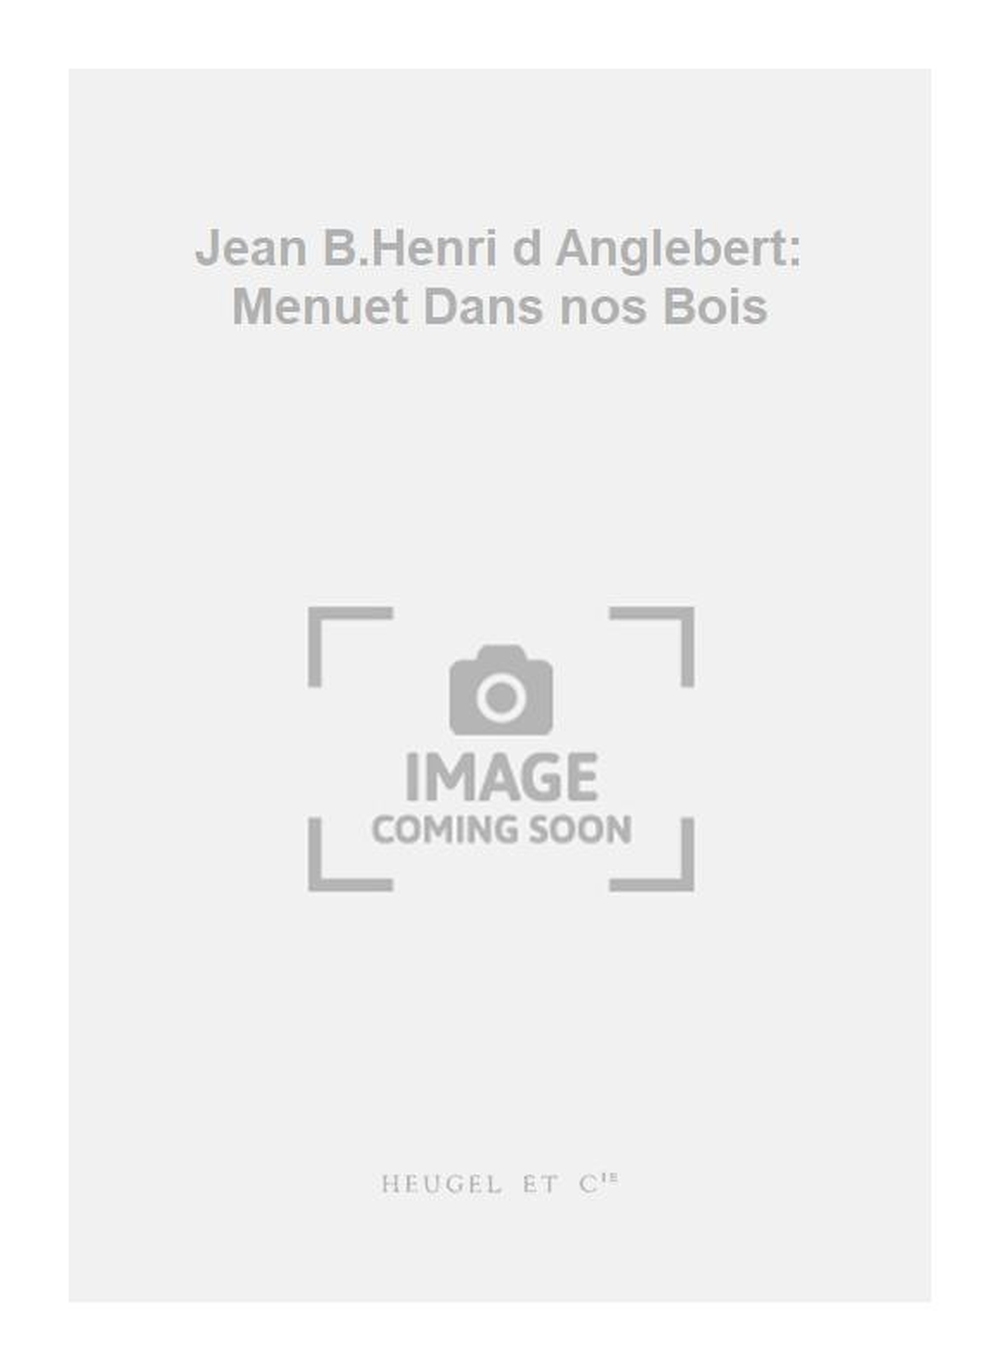 Jean-Henri D'Anglebert: Jean B.Henri d Anglebert: Menuet Dans nos Bois